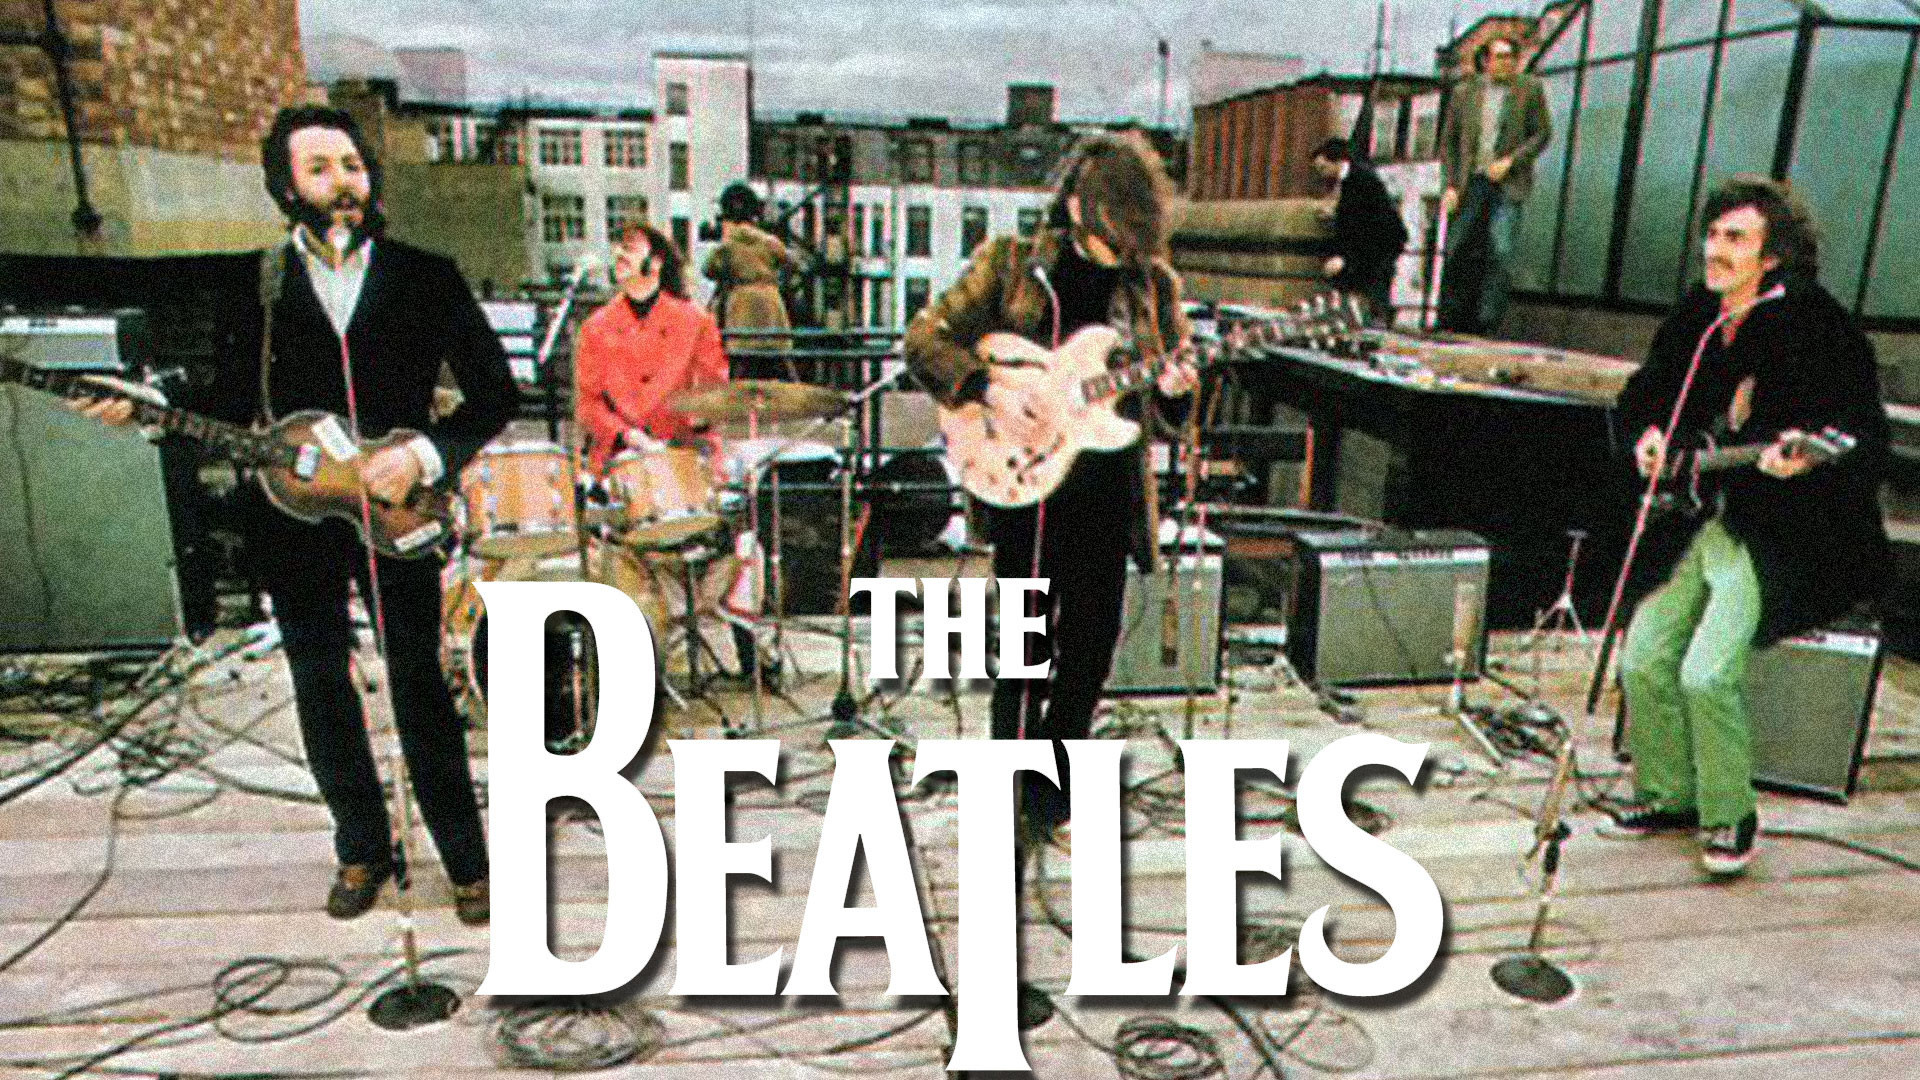 Beatles rooftop concert 1969 1920x1080.